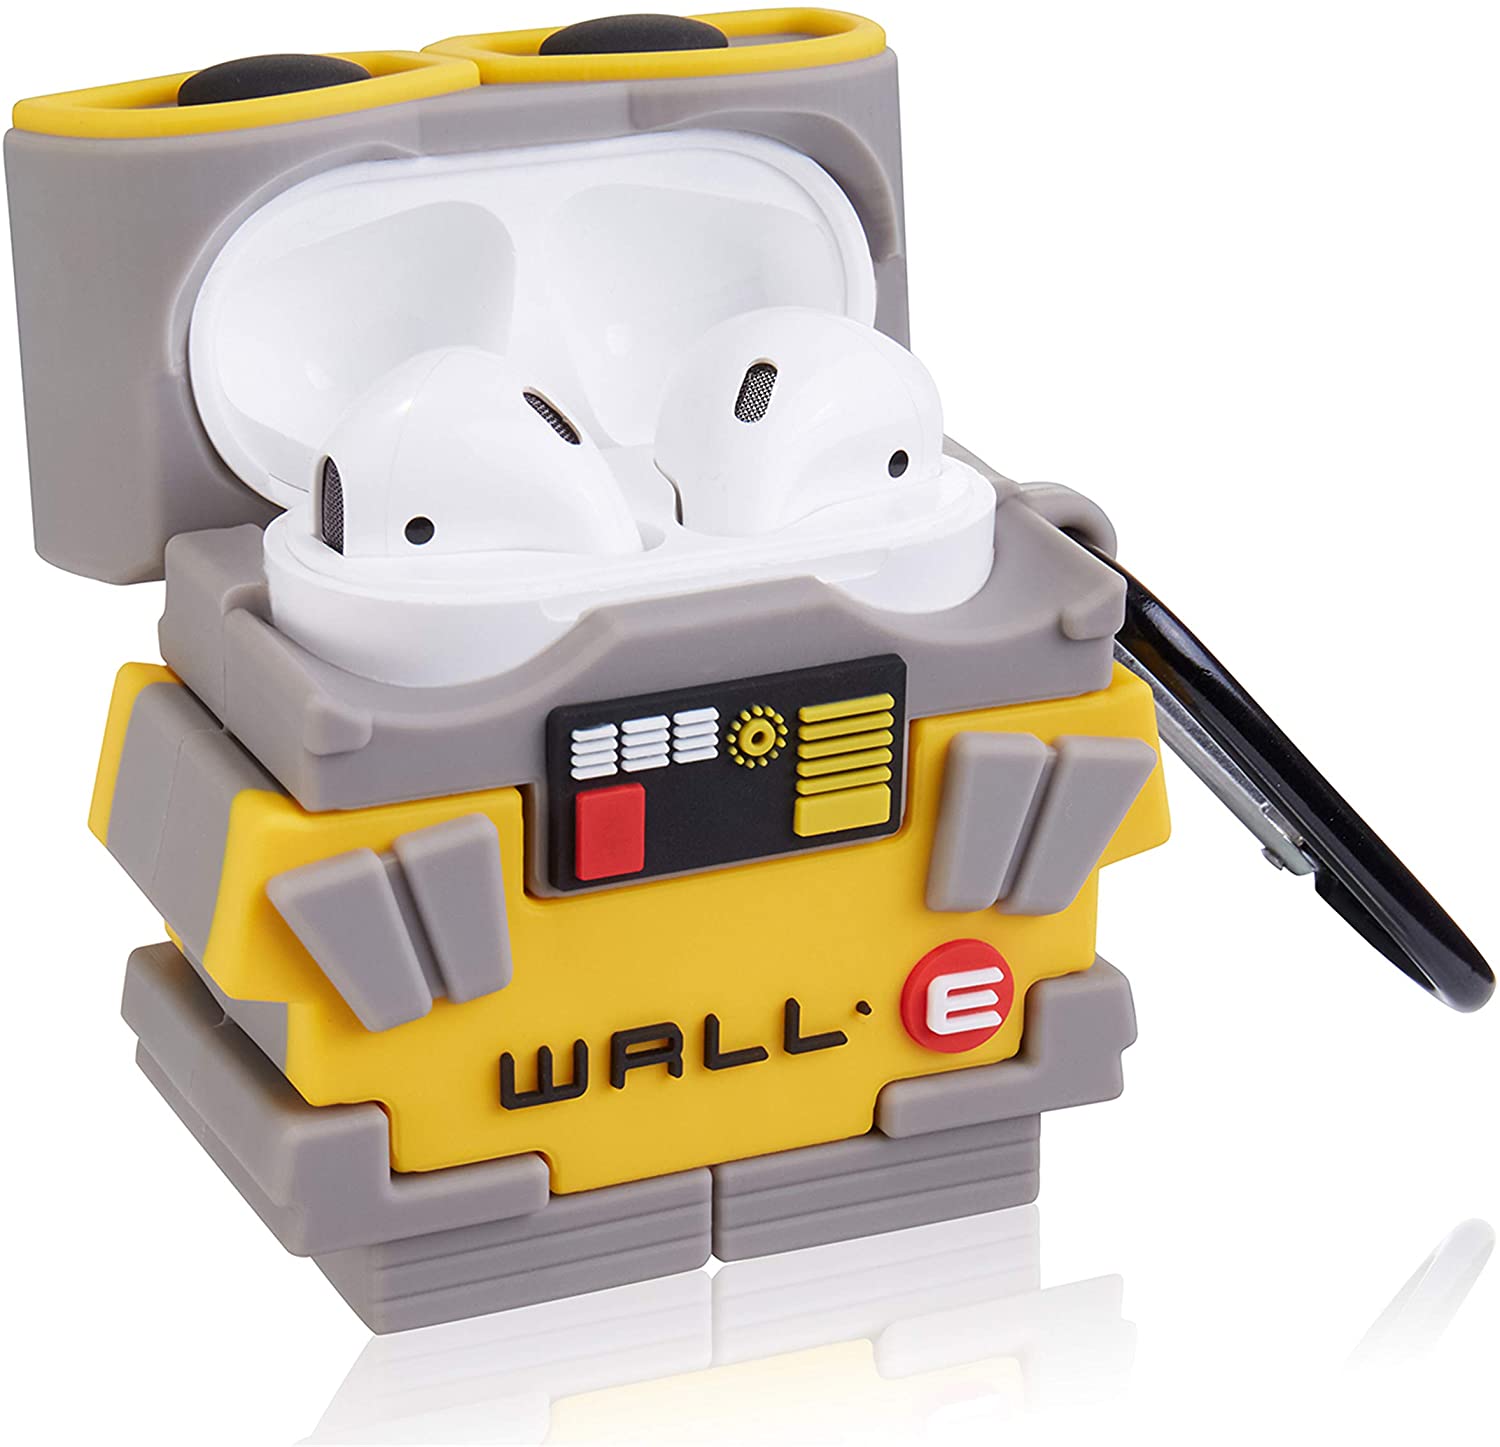 WALL E Airpods Case - 0